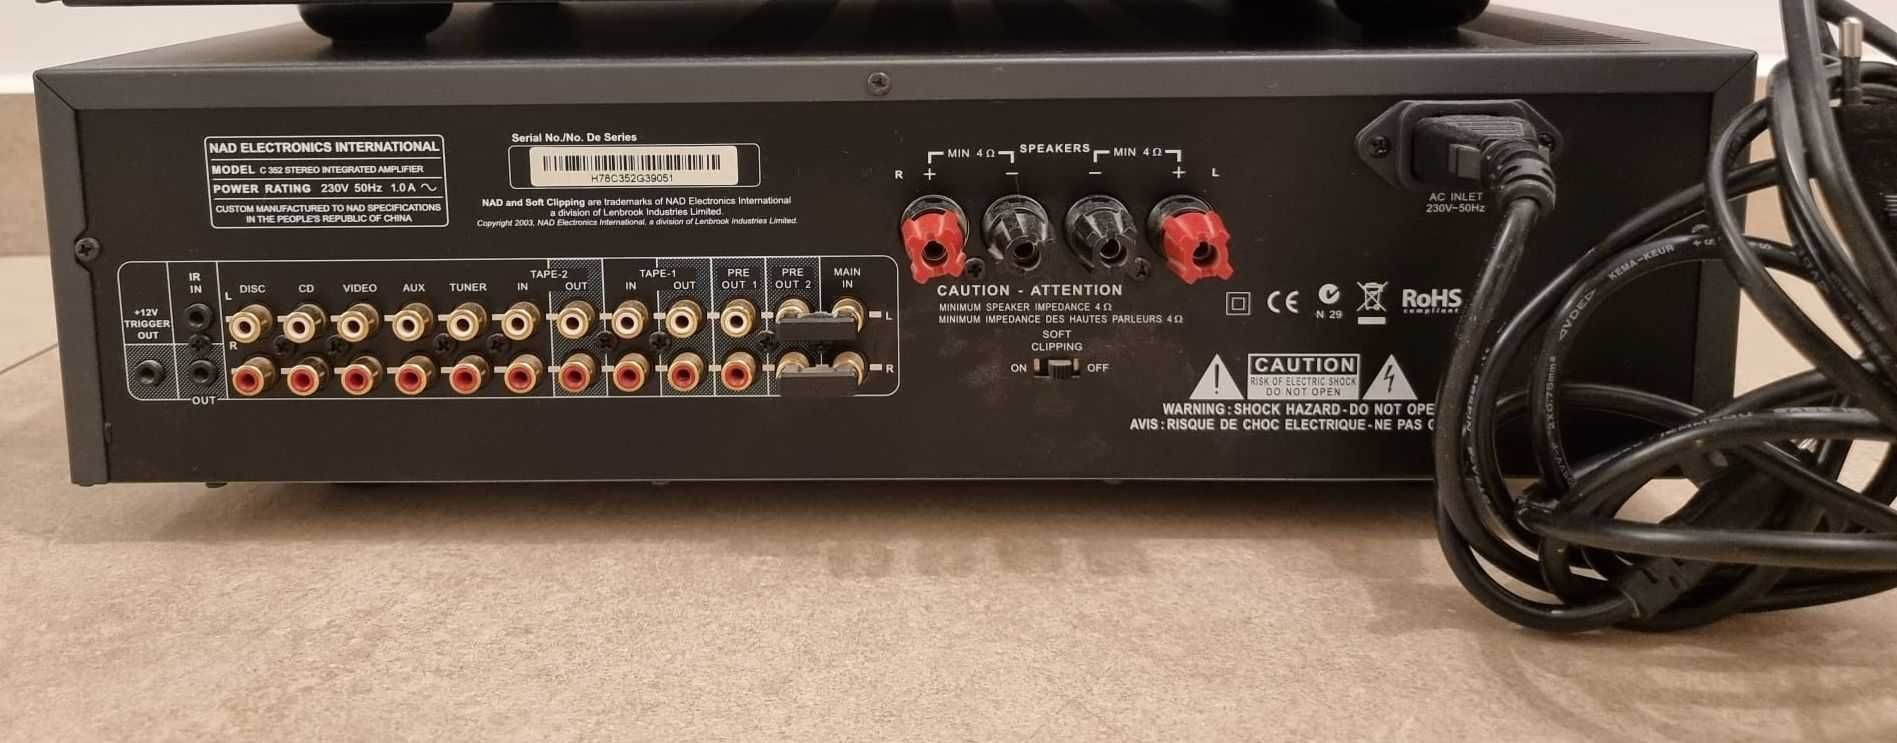 Amplificator NAD C352 impecabil cu telecomanda originala.